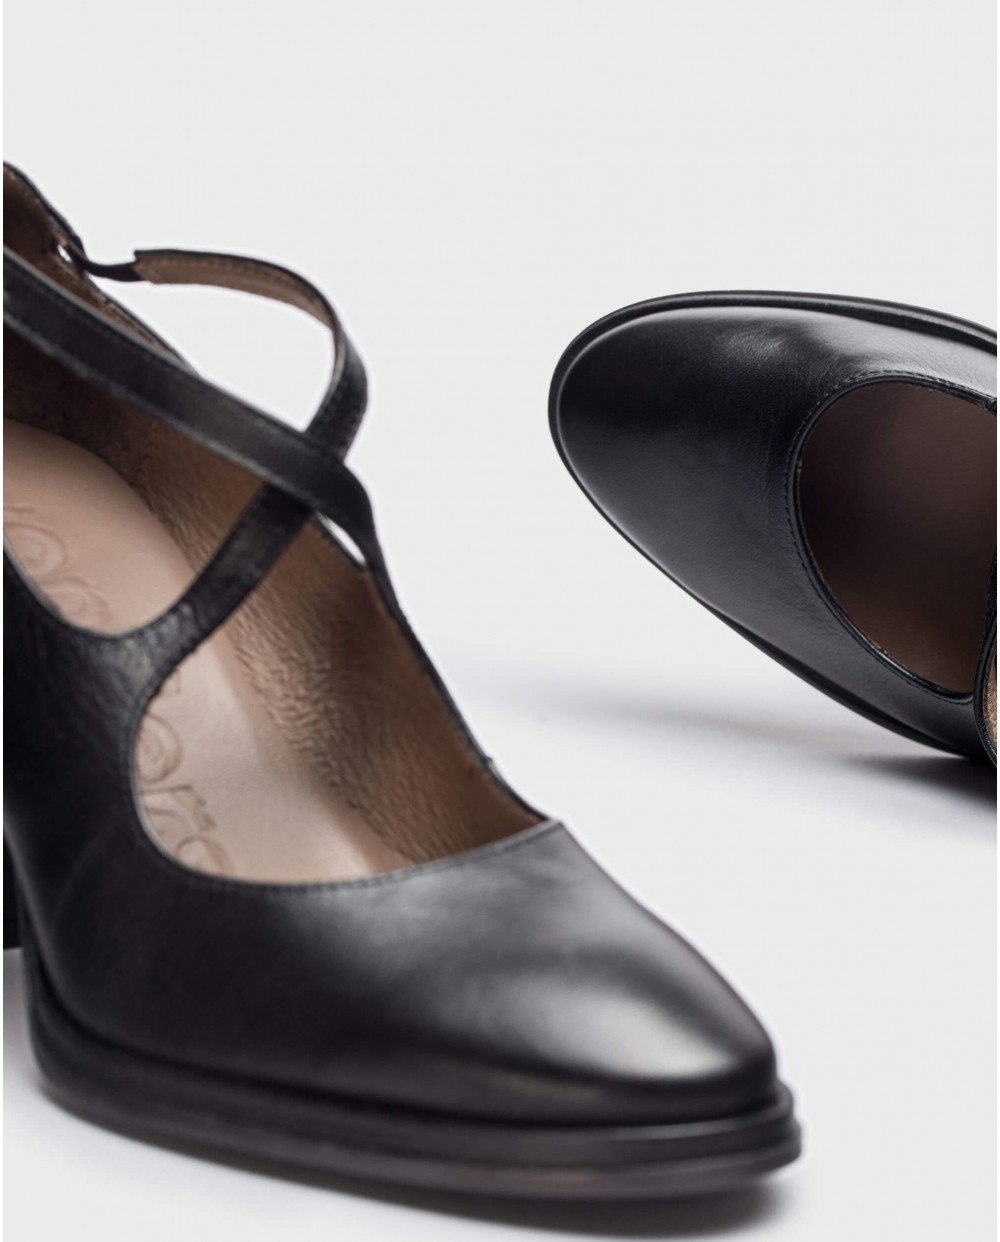 Wonders-Heels-Black CONI shoe